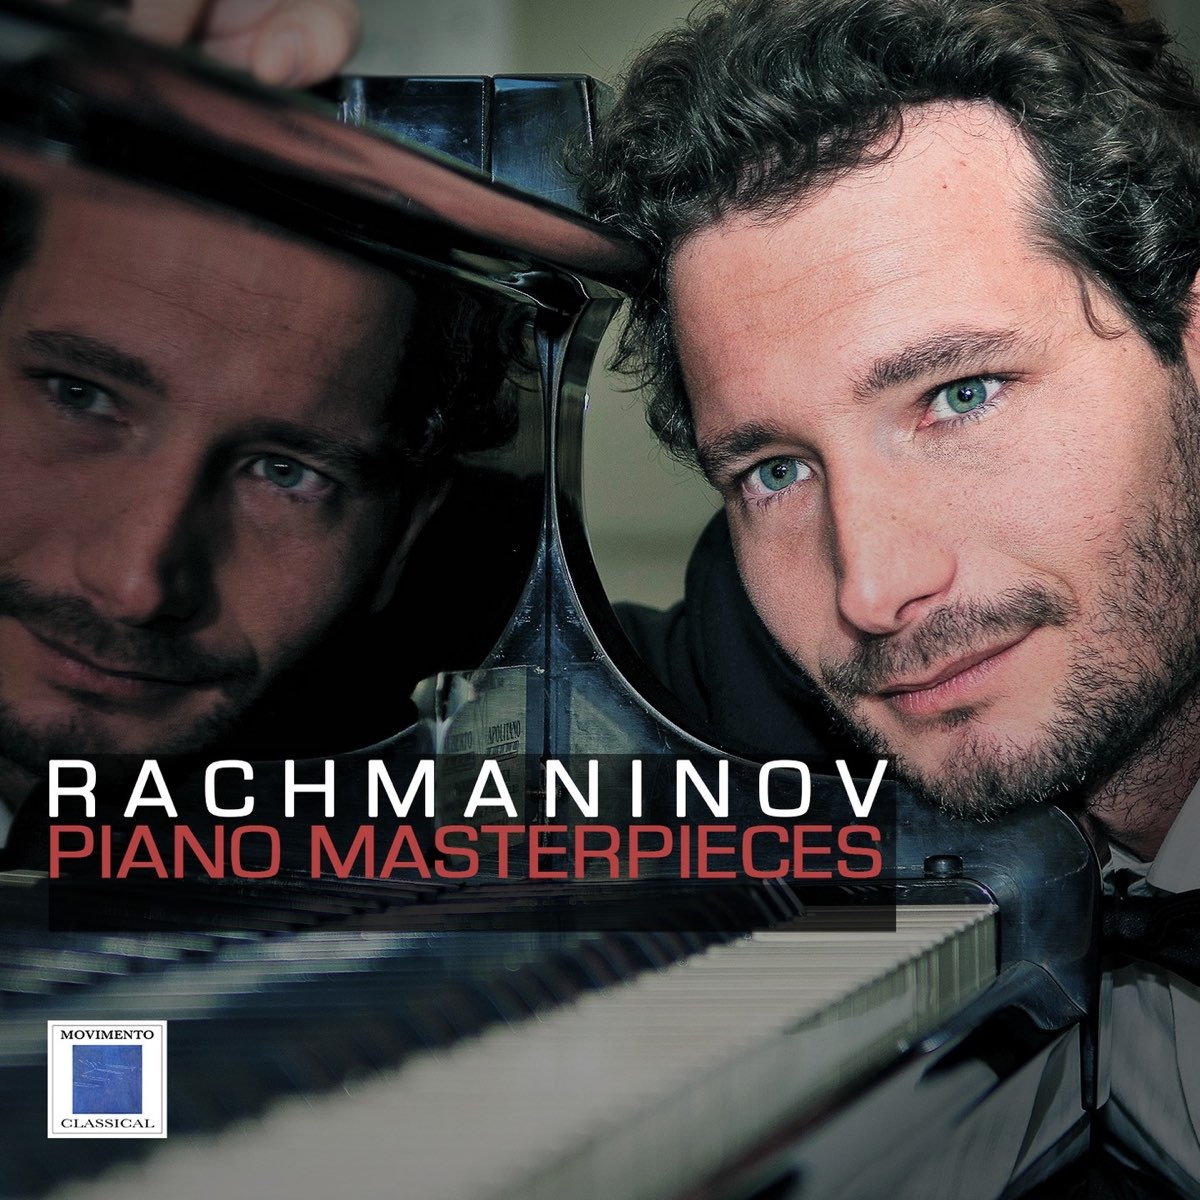 Rachmaninov: Piano Masterpieces de Marco Ciampi en Apple Music